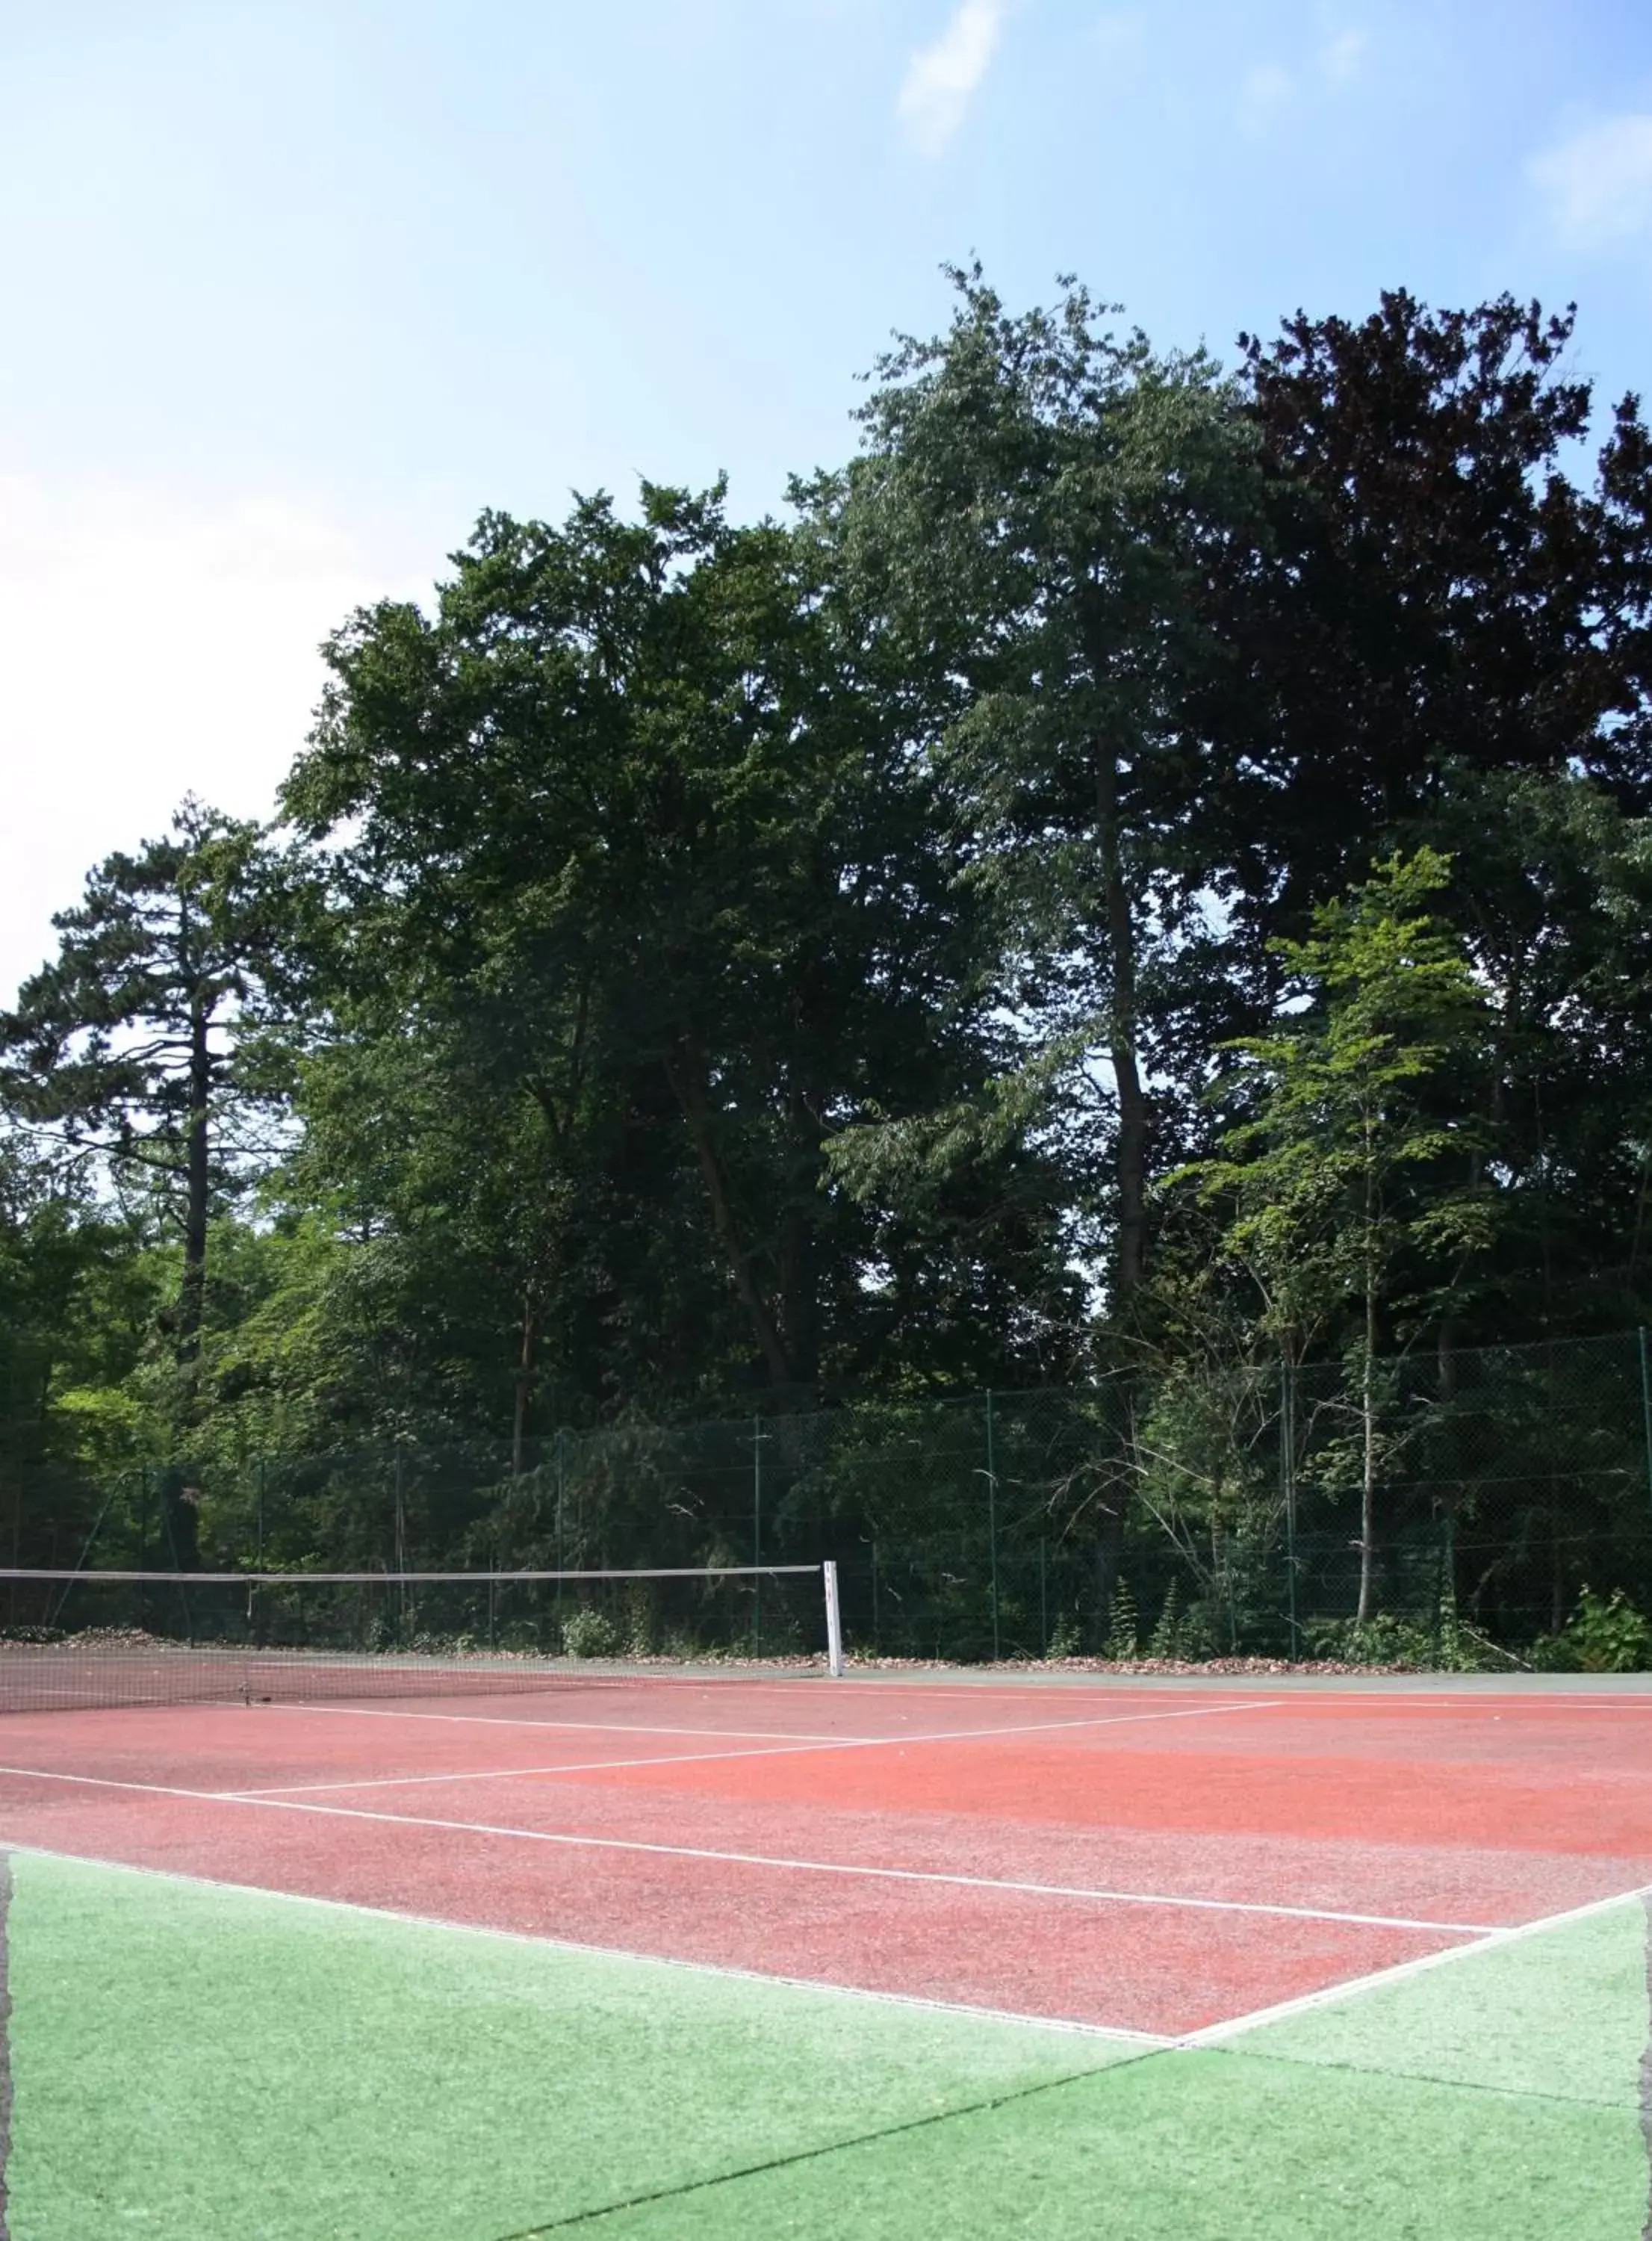 Tennis court in Le Grand Monarque